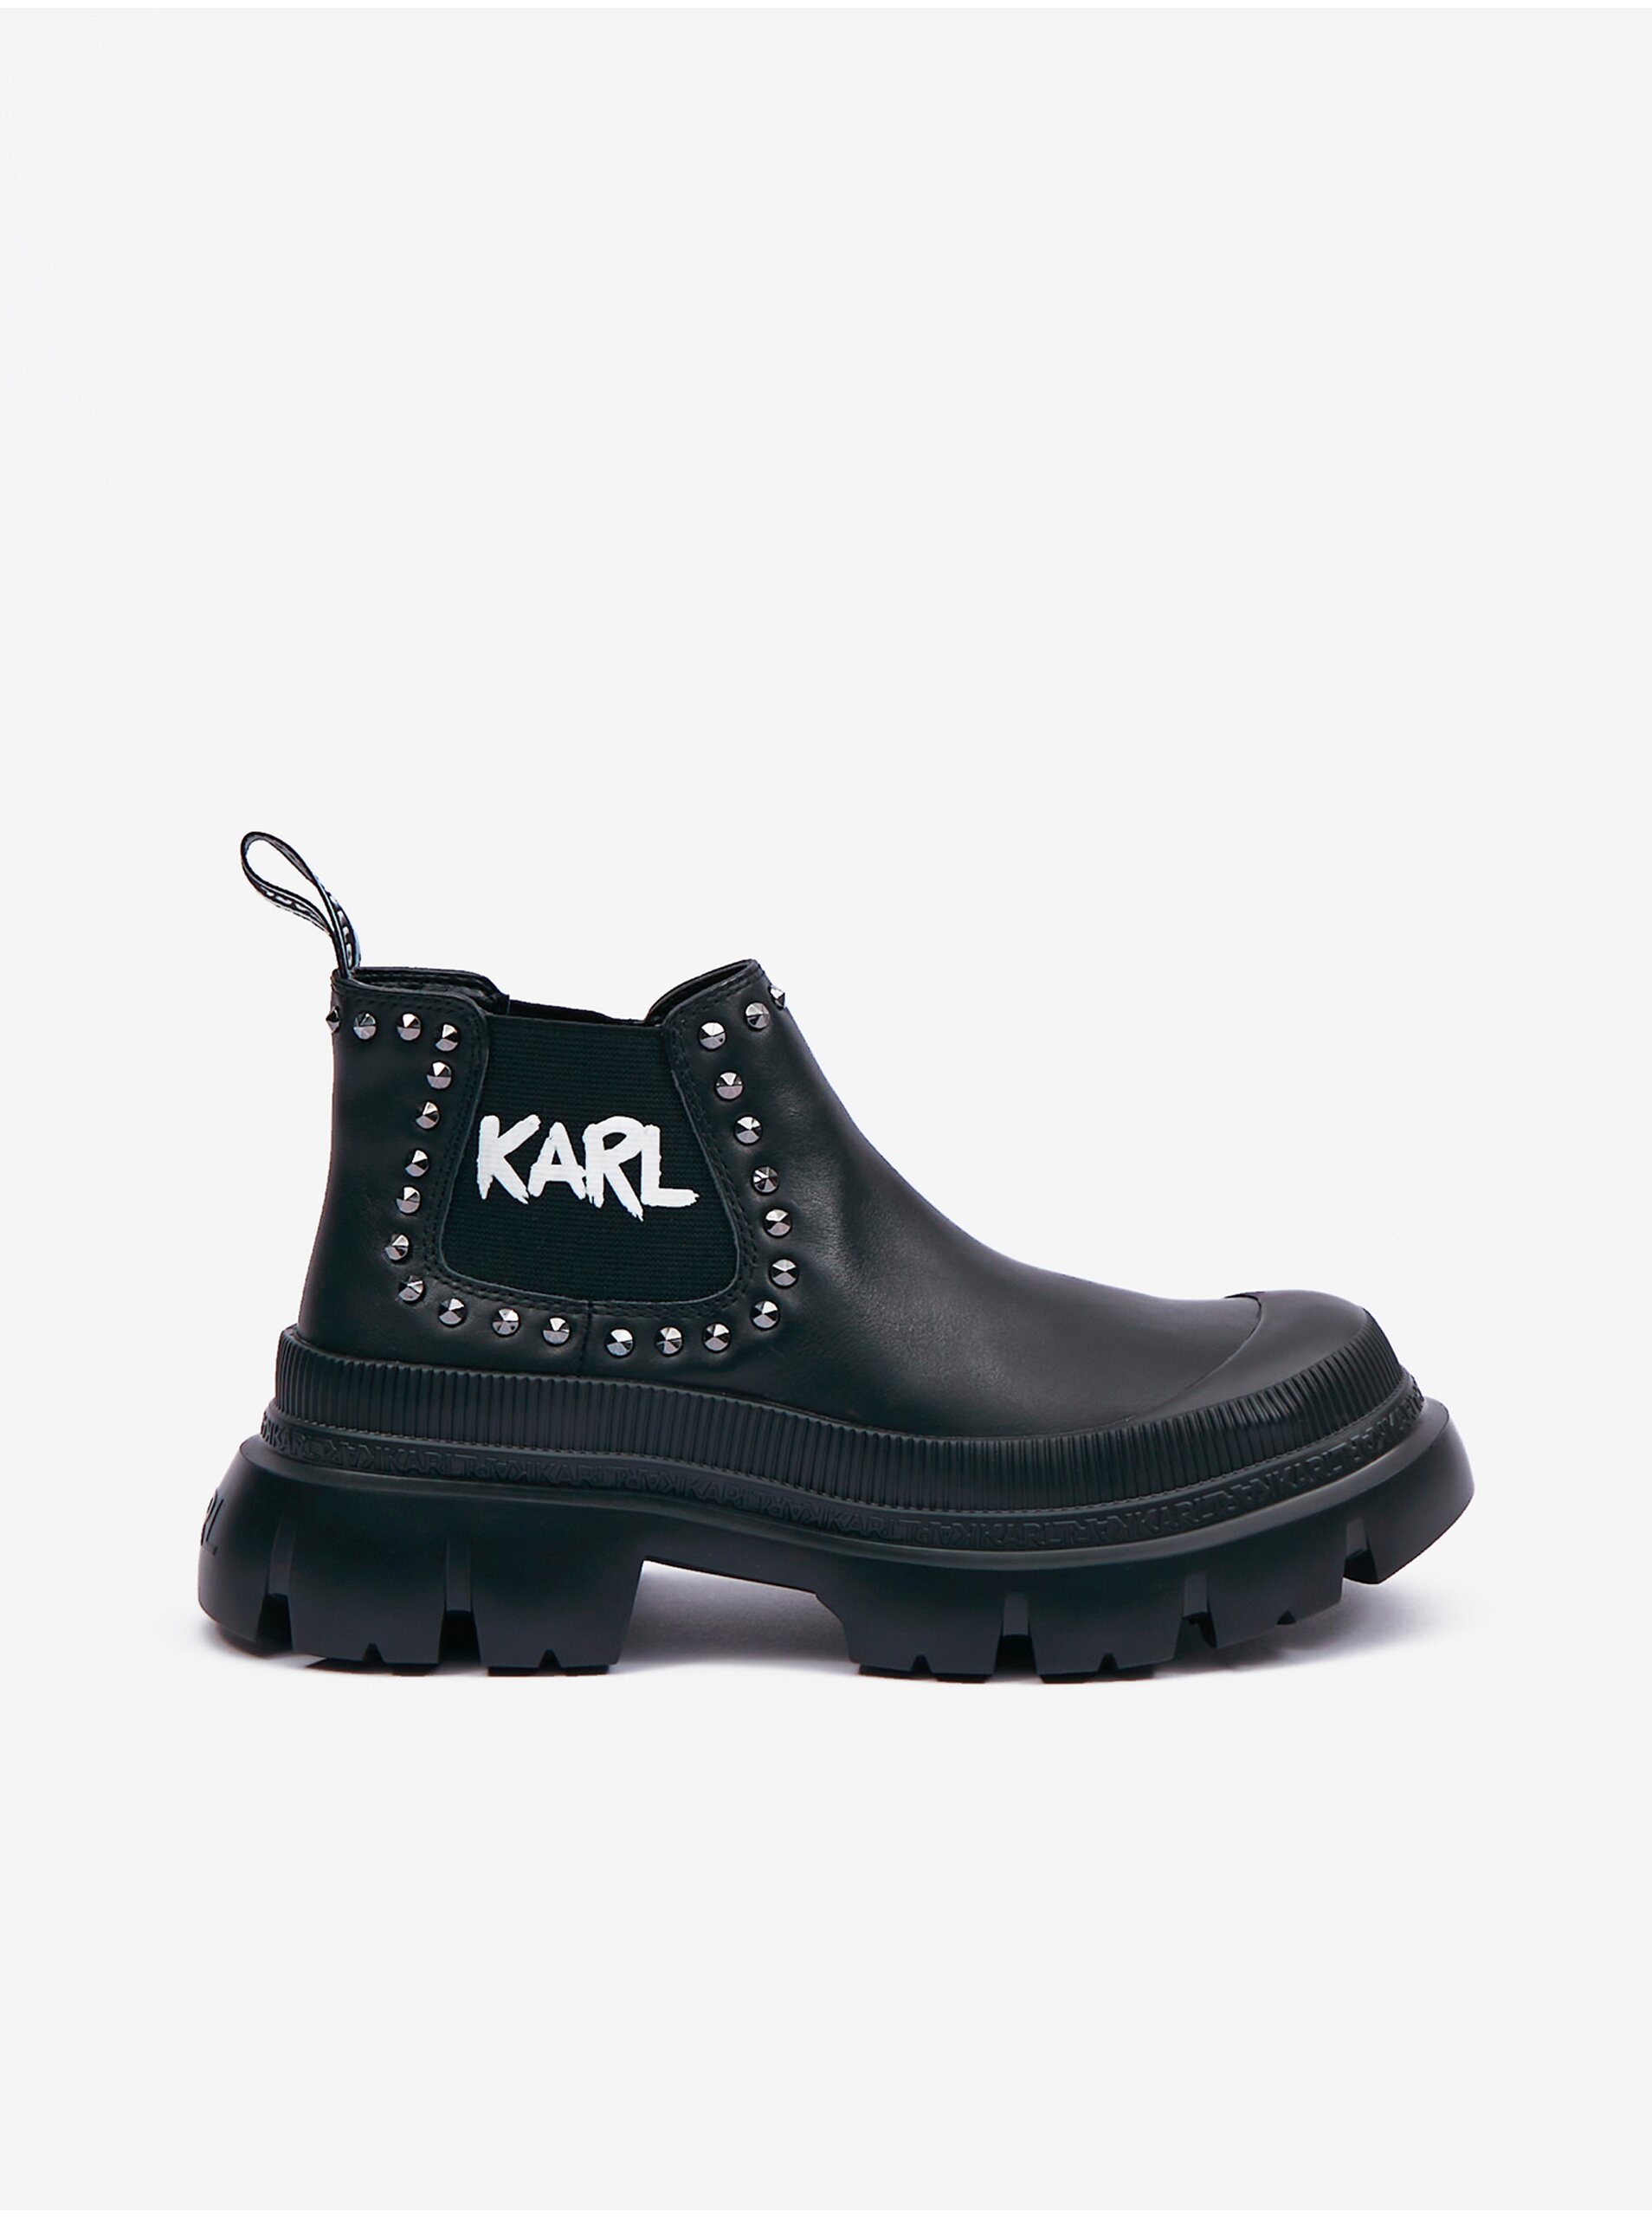 Lacno Čierne dámske kožené členkové topánky KARL LAGERFELD Trekka Max